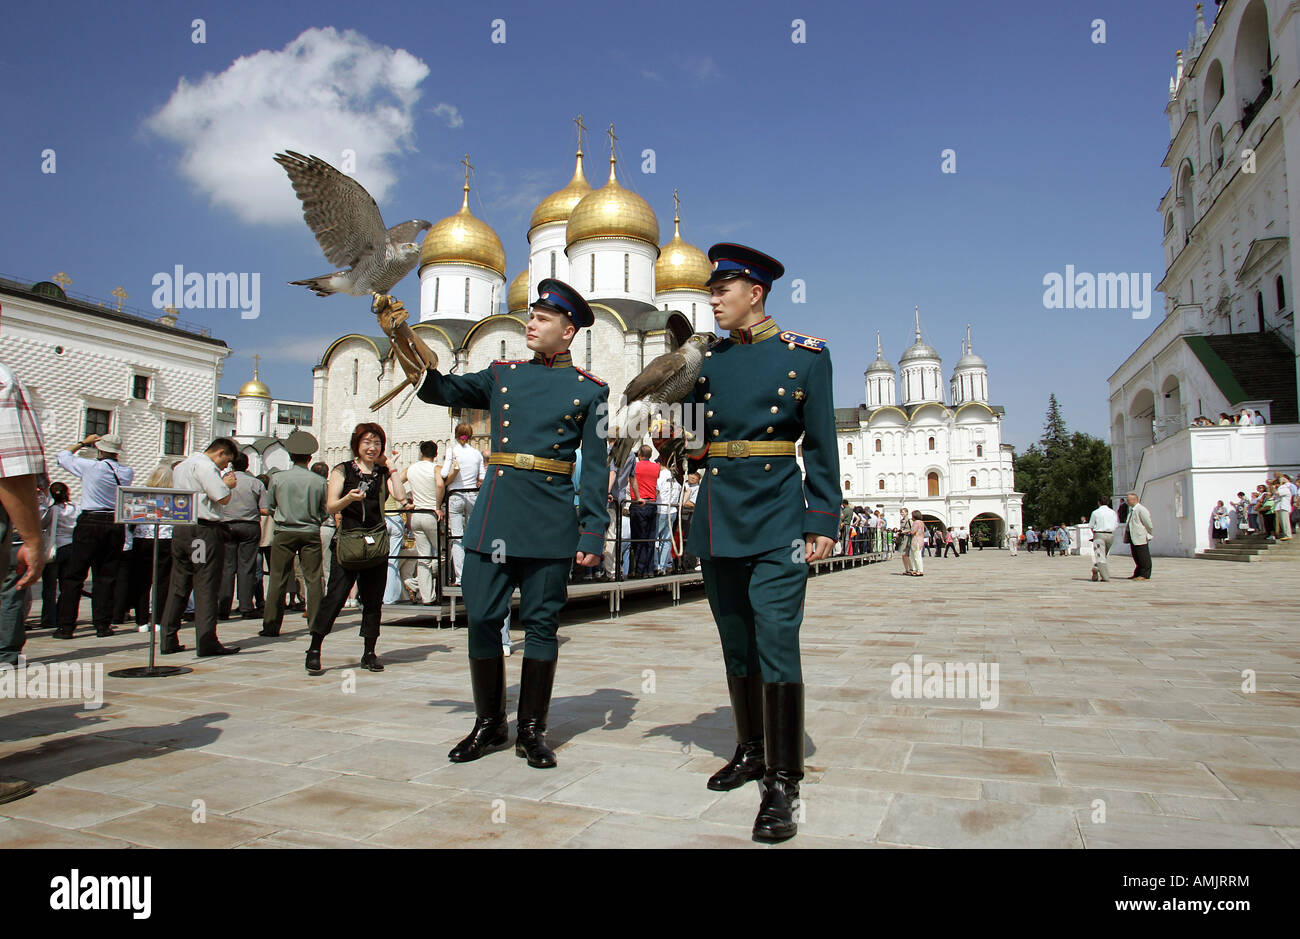 Soldaten in den traditionellen Uniformen der Zaren Garde, mit ihre Falken, Moskau, Russland Stockfoto